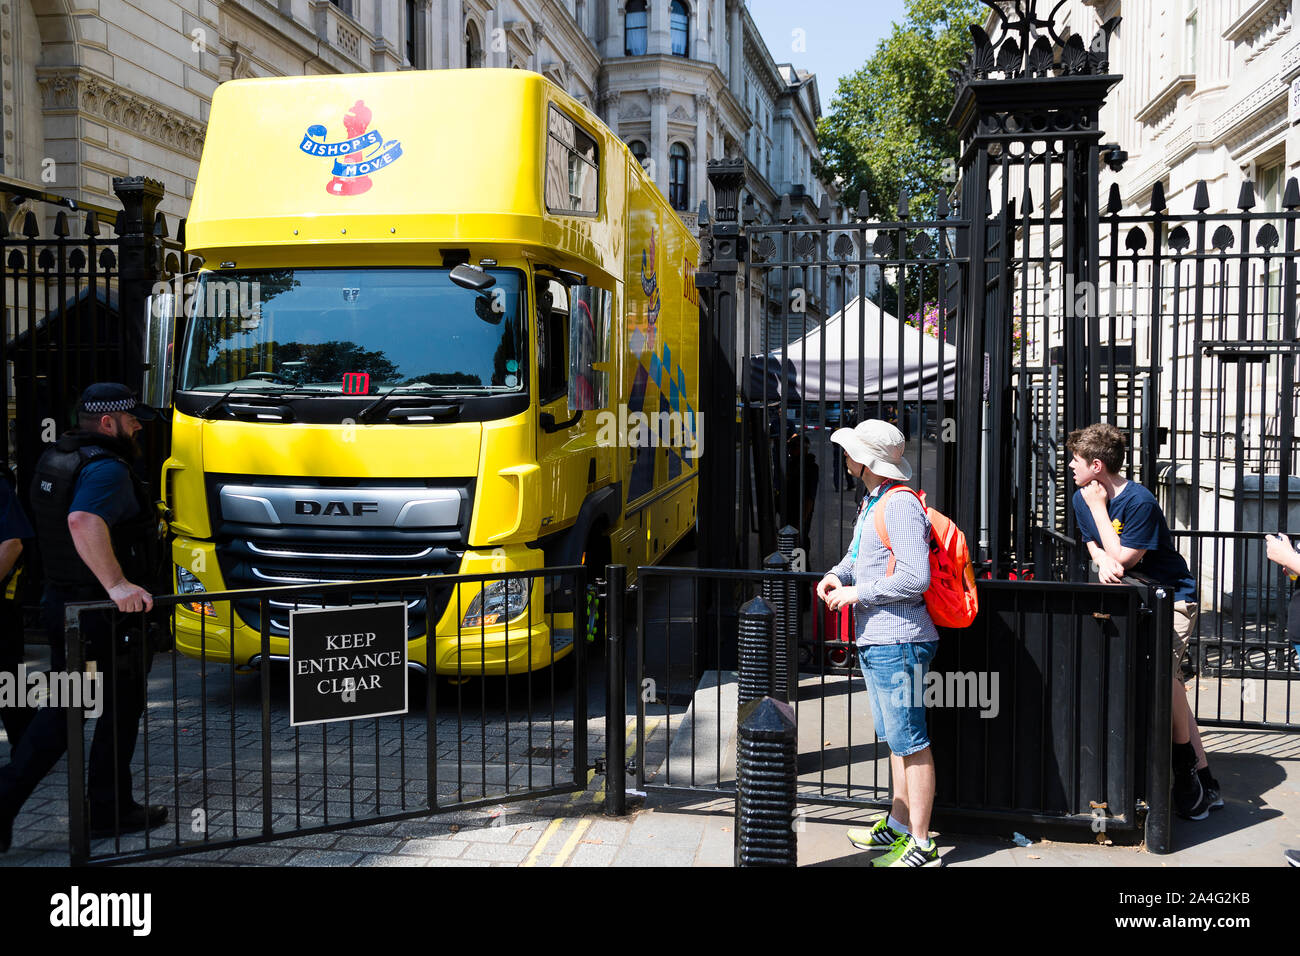 Londres, Royaume-Uni. Un déplacement de l'évêque jaune camion renverse dans Downing Street comme Boris Johnson assume le poste de premier ministre. Banque D'Images